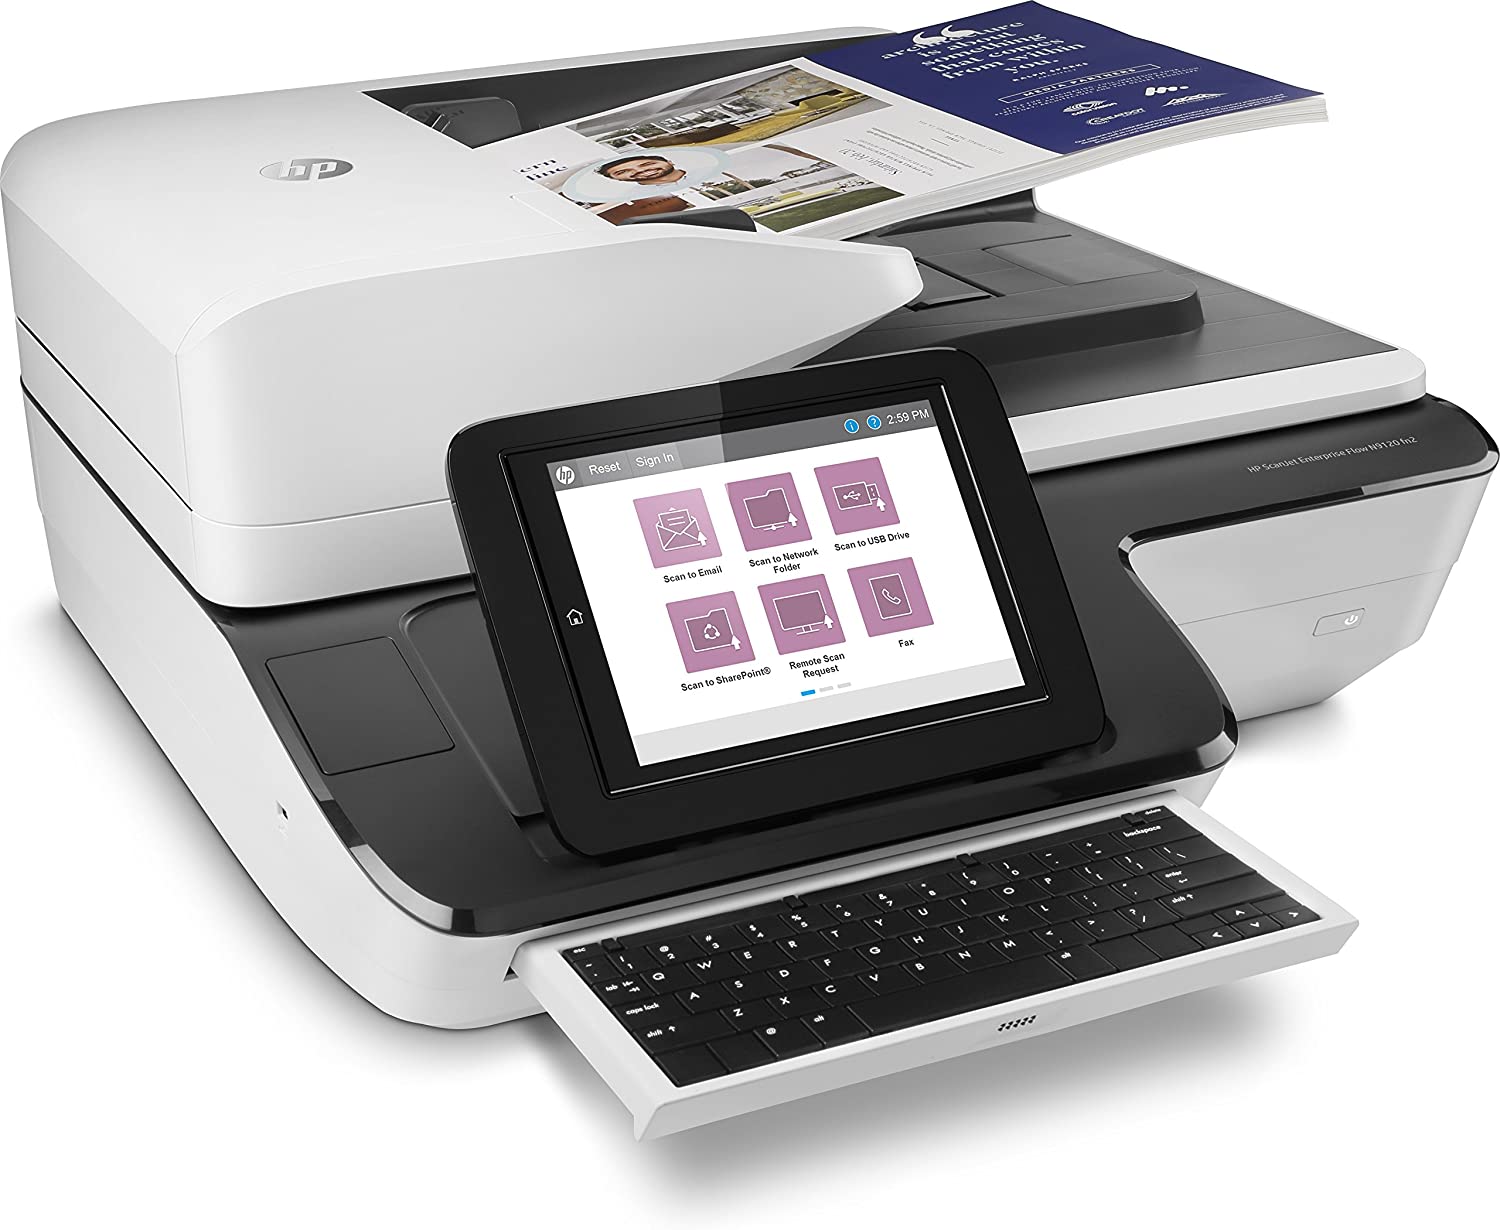 Scanner de documents HP ScanJet Enterprise Flow N9120 fn2 A3 - Vitesse jusqu'à 120 ppm - Chargeur automatique - Recto verso